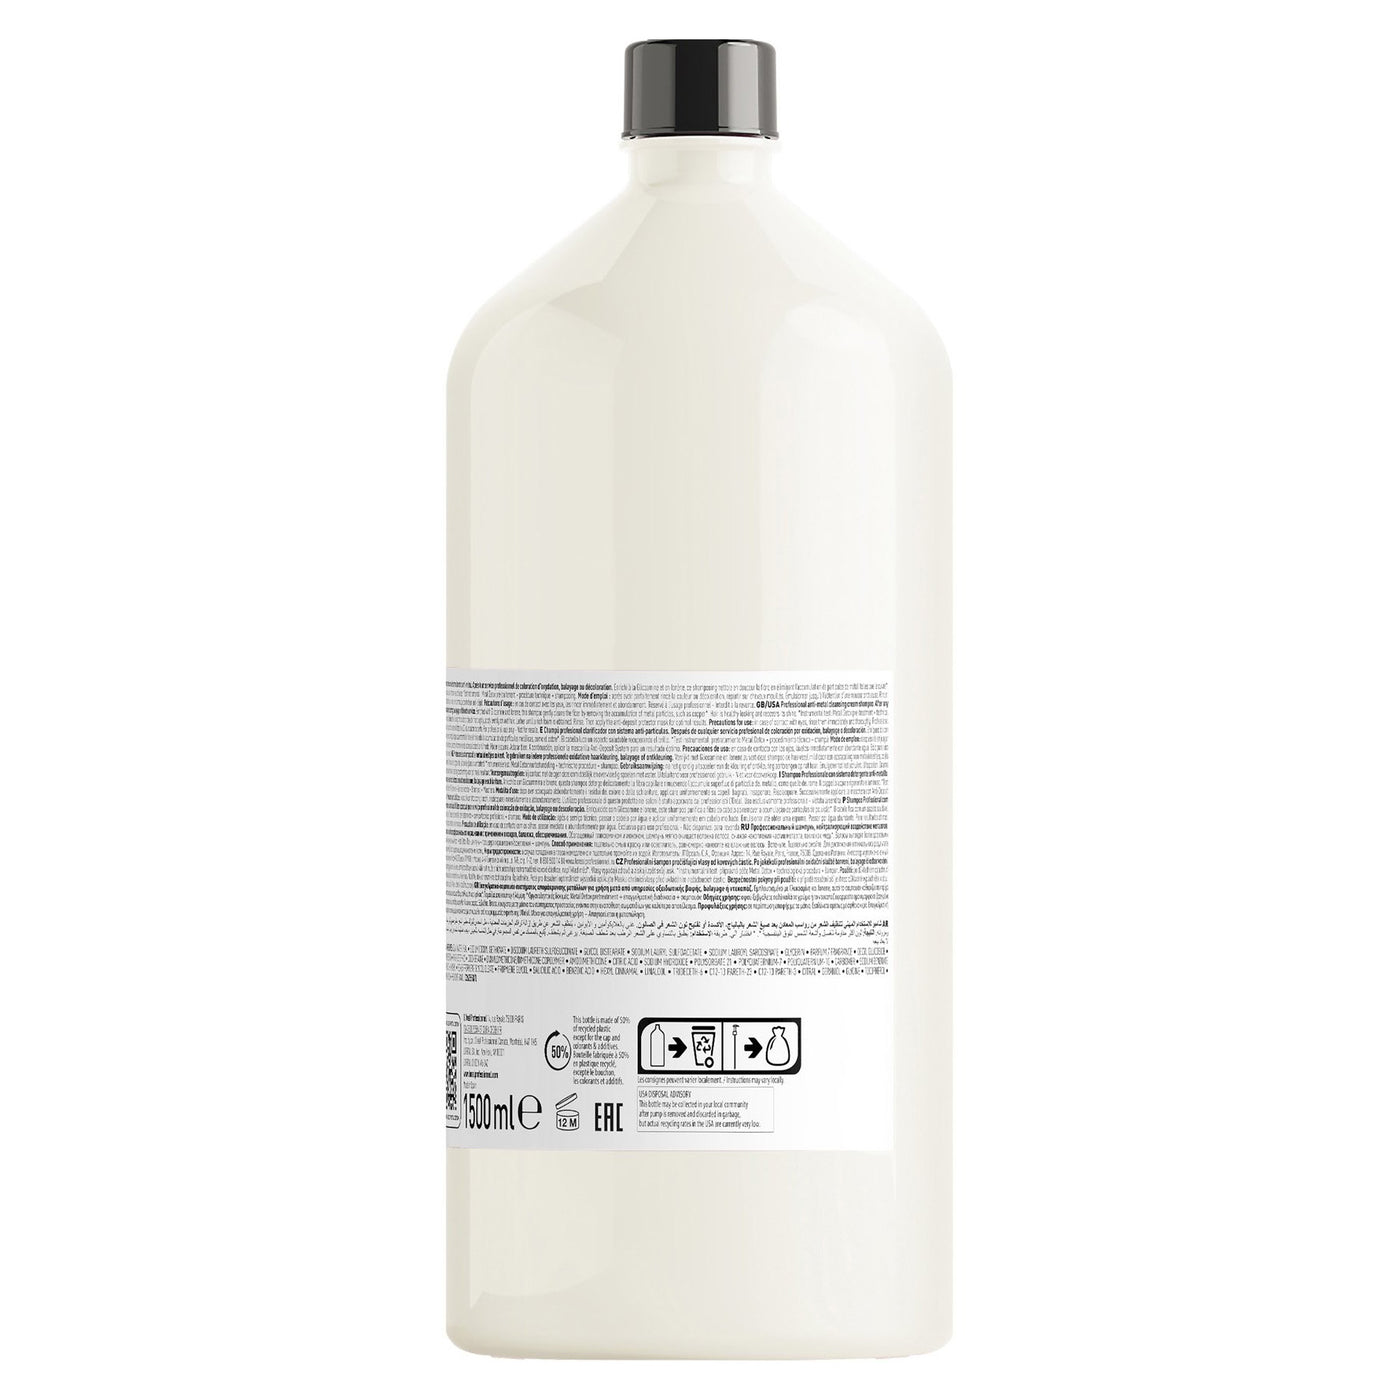 L'Oreal Professionnel Metal Detox Shampoo 1.5 Litre